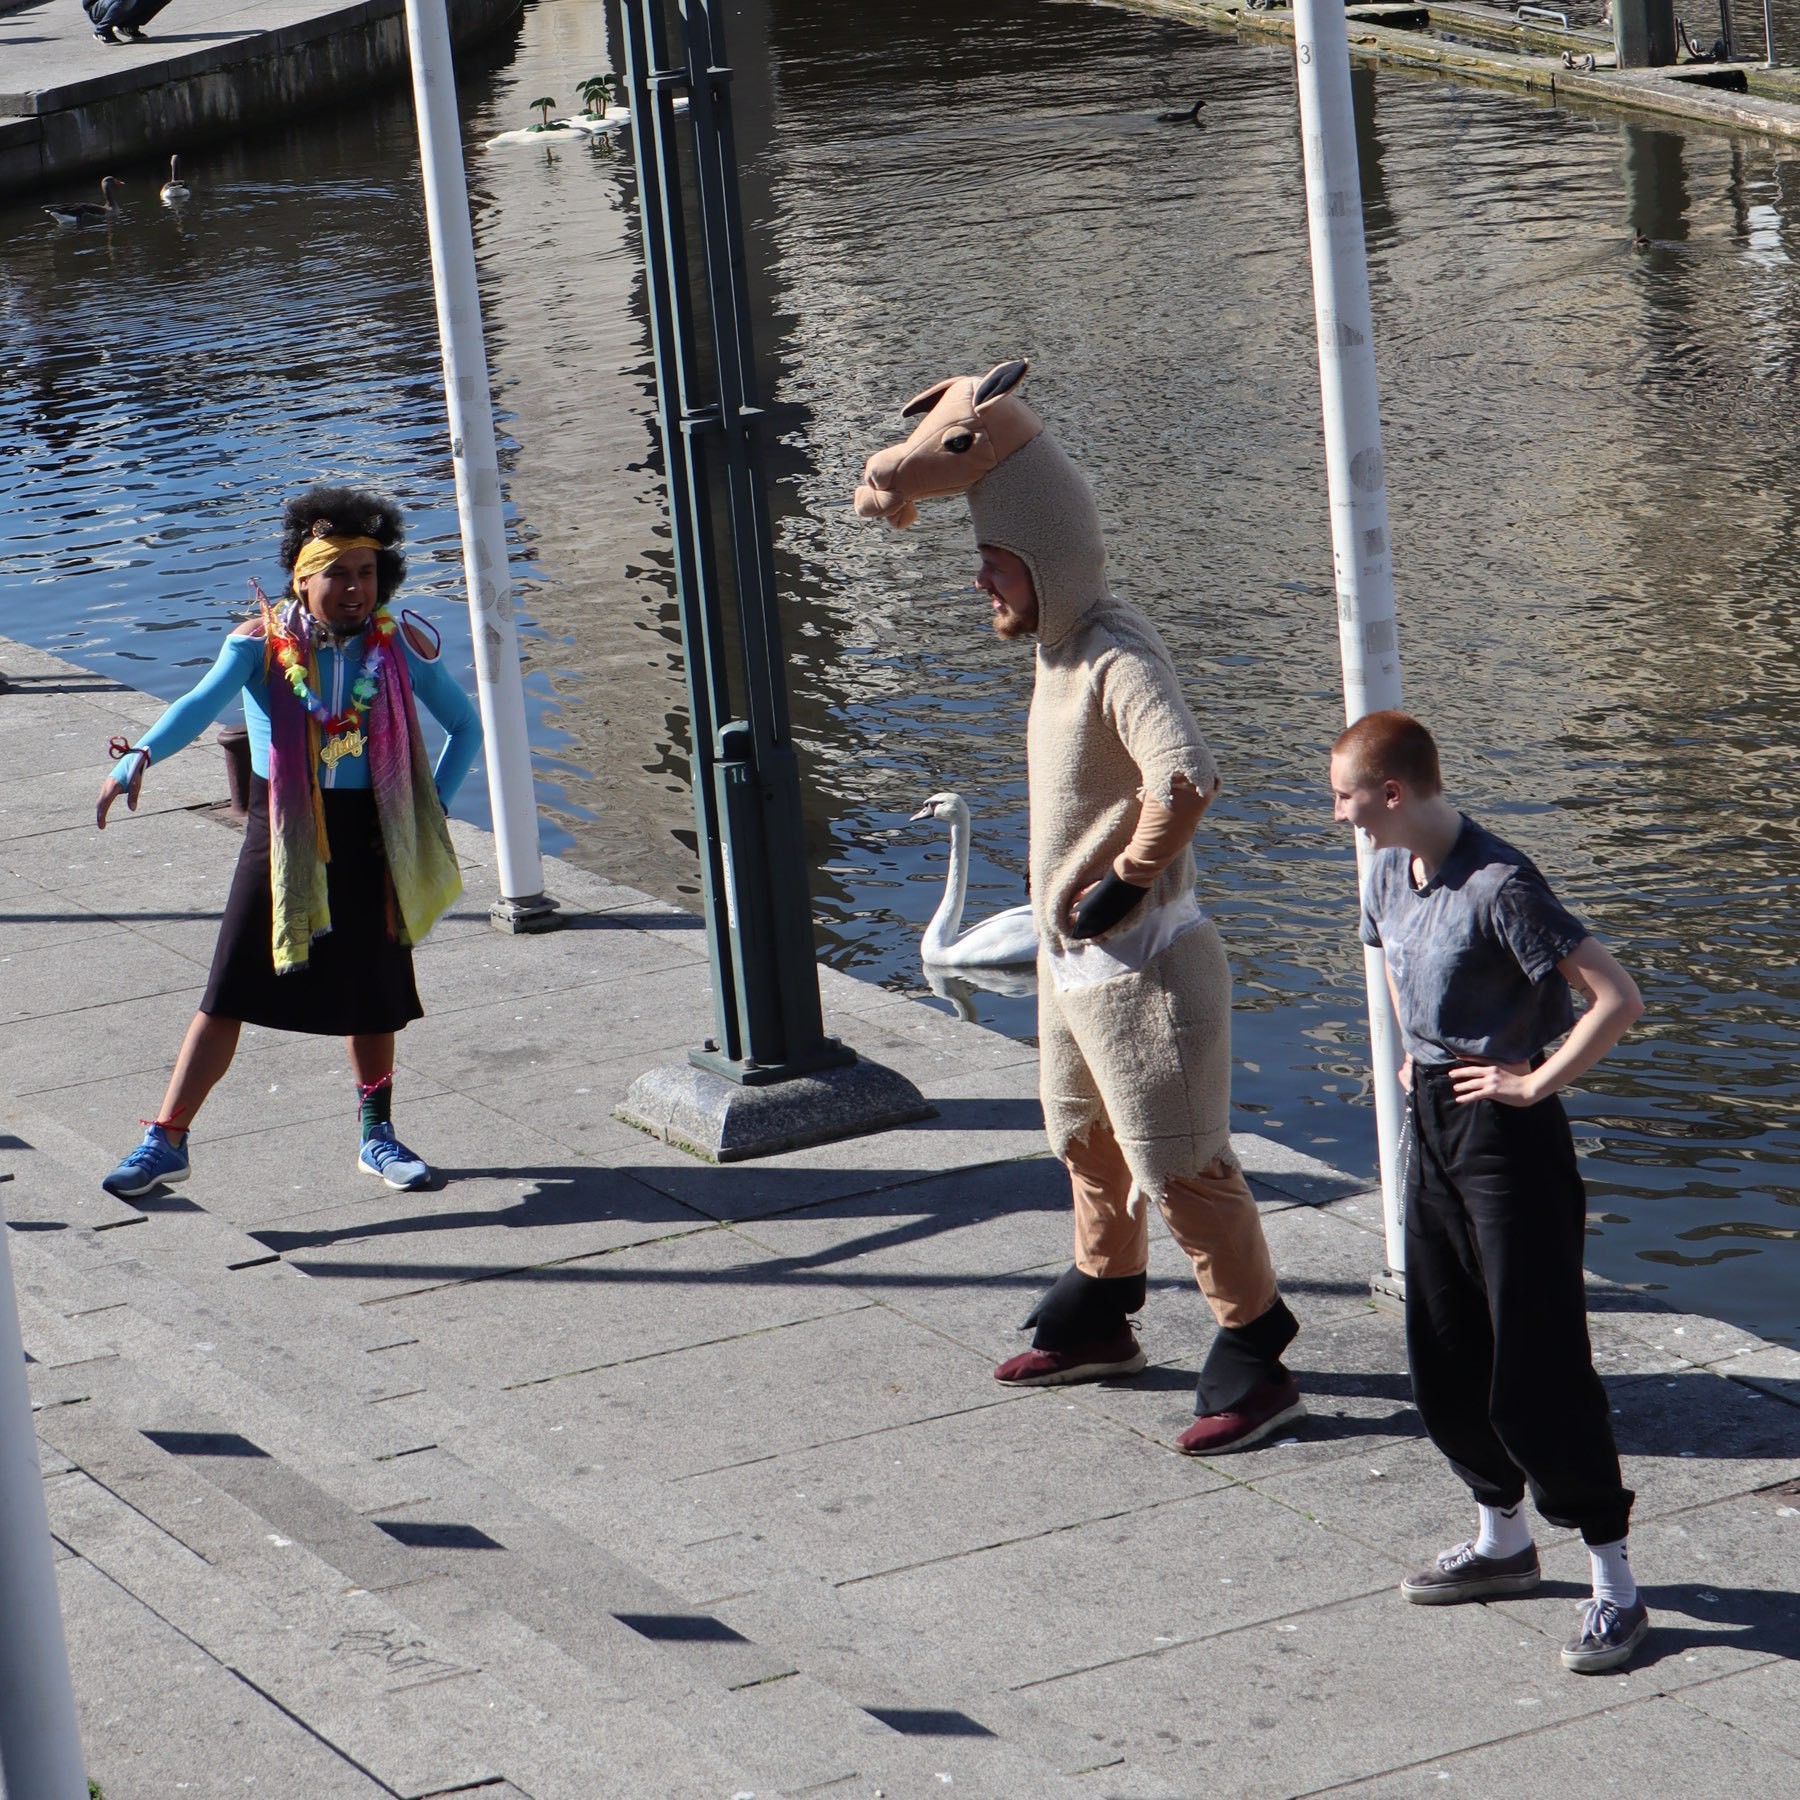 Street performers in Hamburg. 